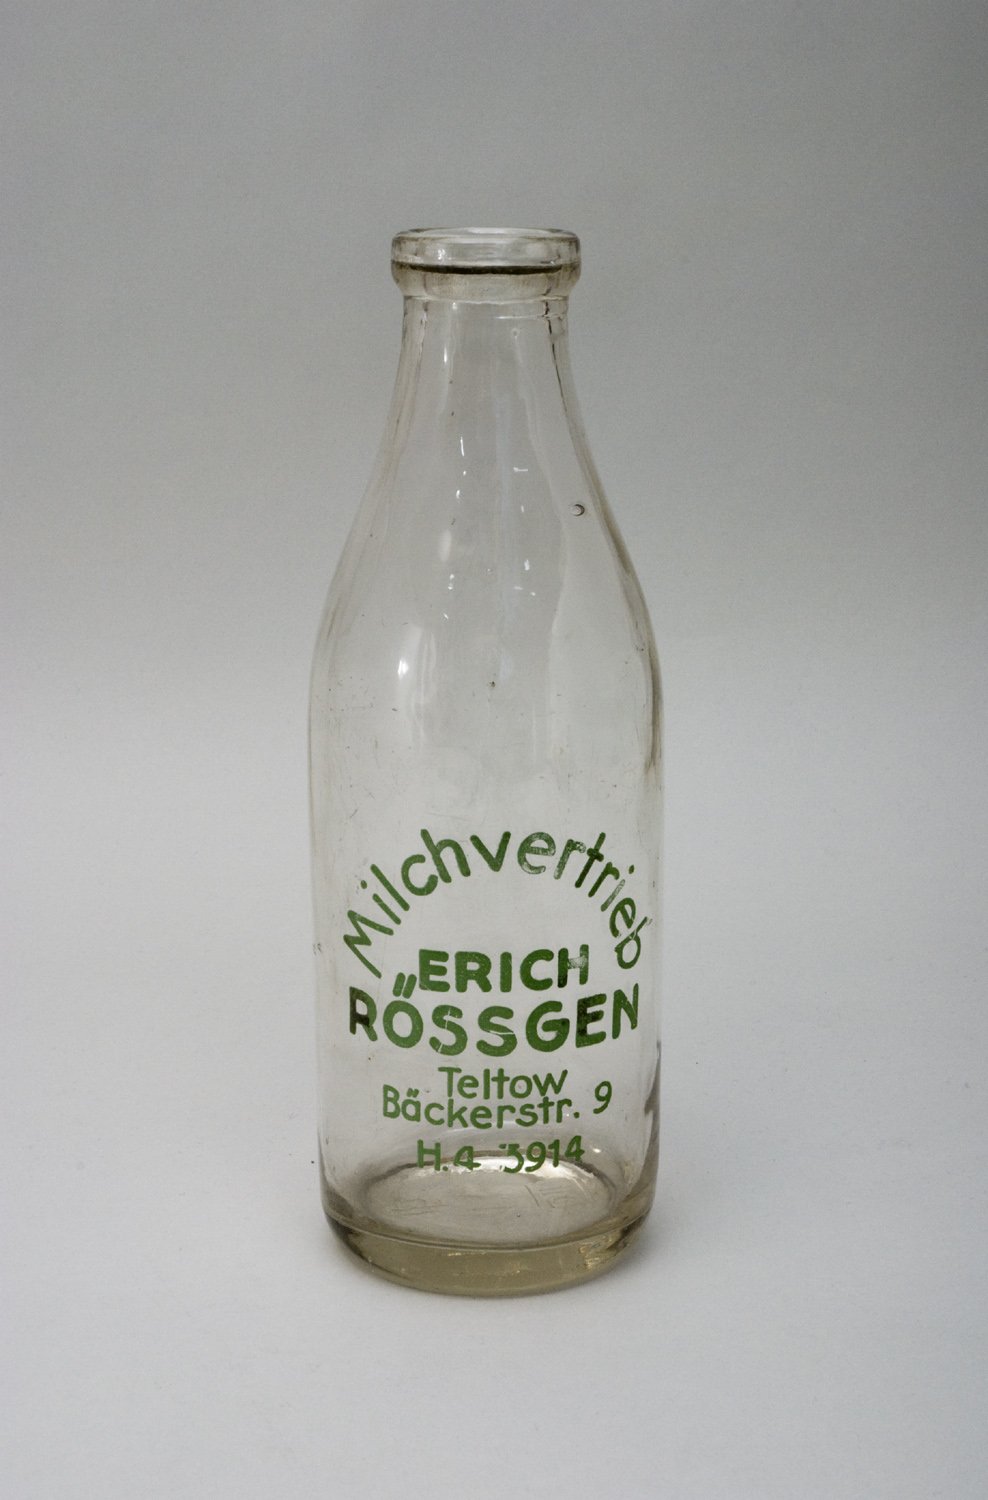 Literflasche "Milchvertrieb Erich Rössgen" (Stiftung Domäne Dahlem - Landgut und Museum, Weiternutzung nur mit Genehmigung des Museums CC BY-NC-SA)